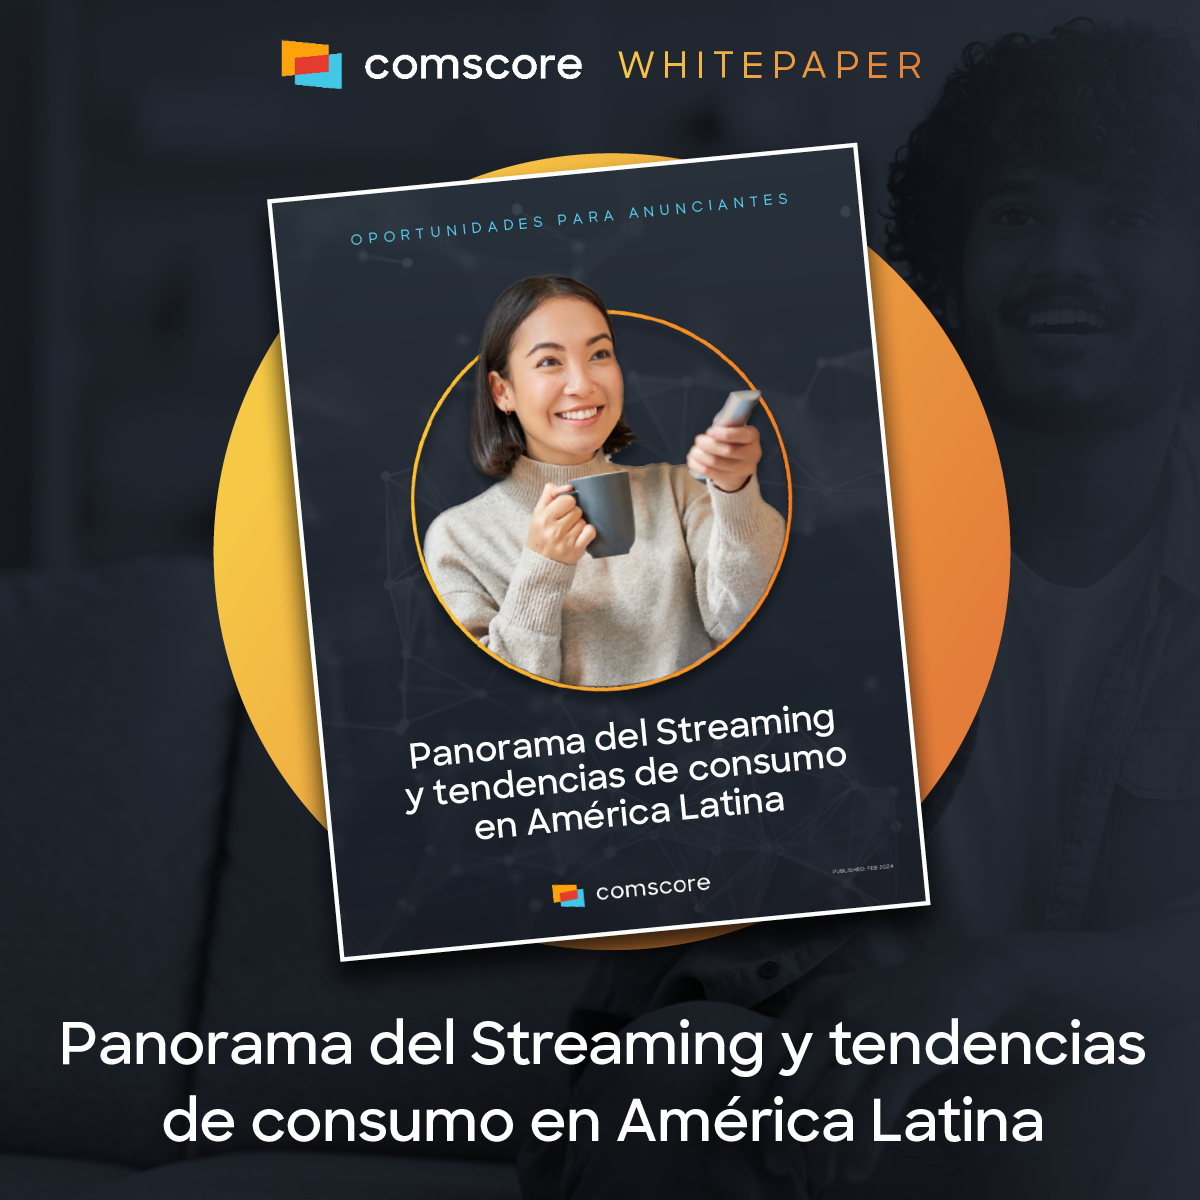 Panorama del Streaming y tendencias de consumo en América Latina